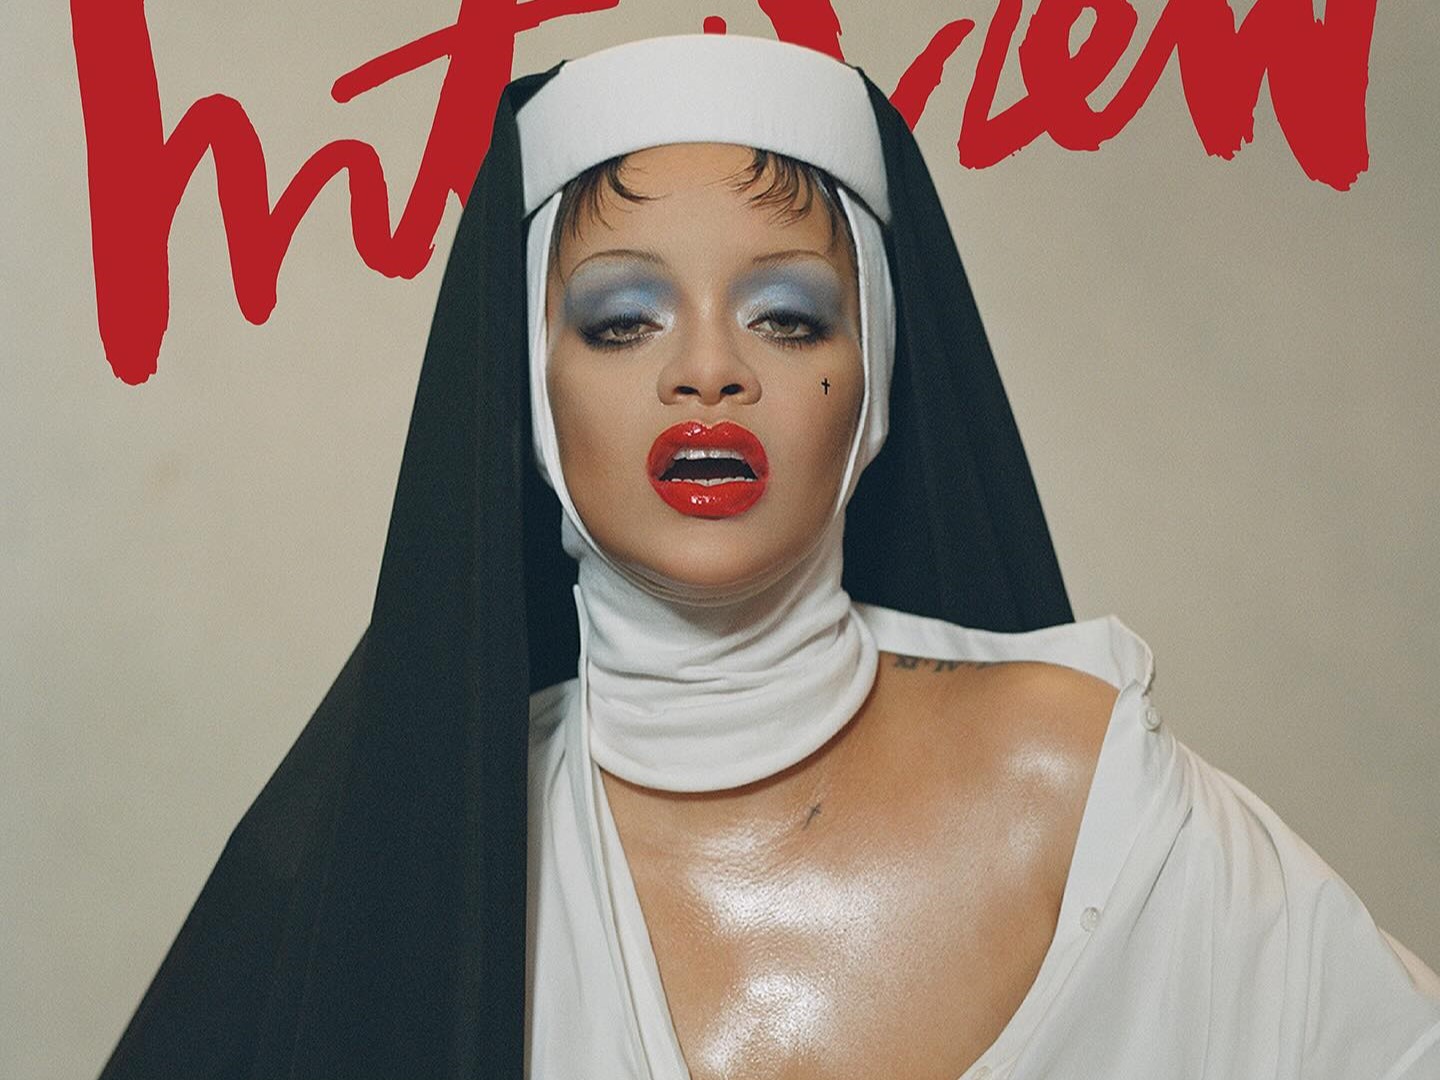 Critics Slam Rihanna's Provocative Nun Photoshoot As "Religious Mockery"